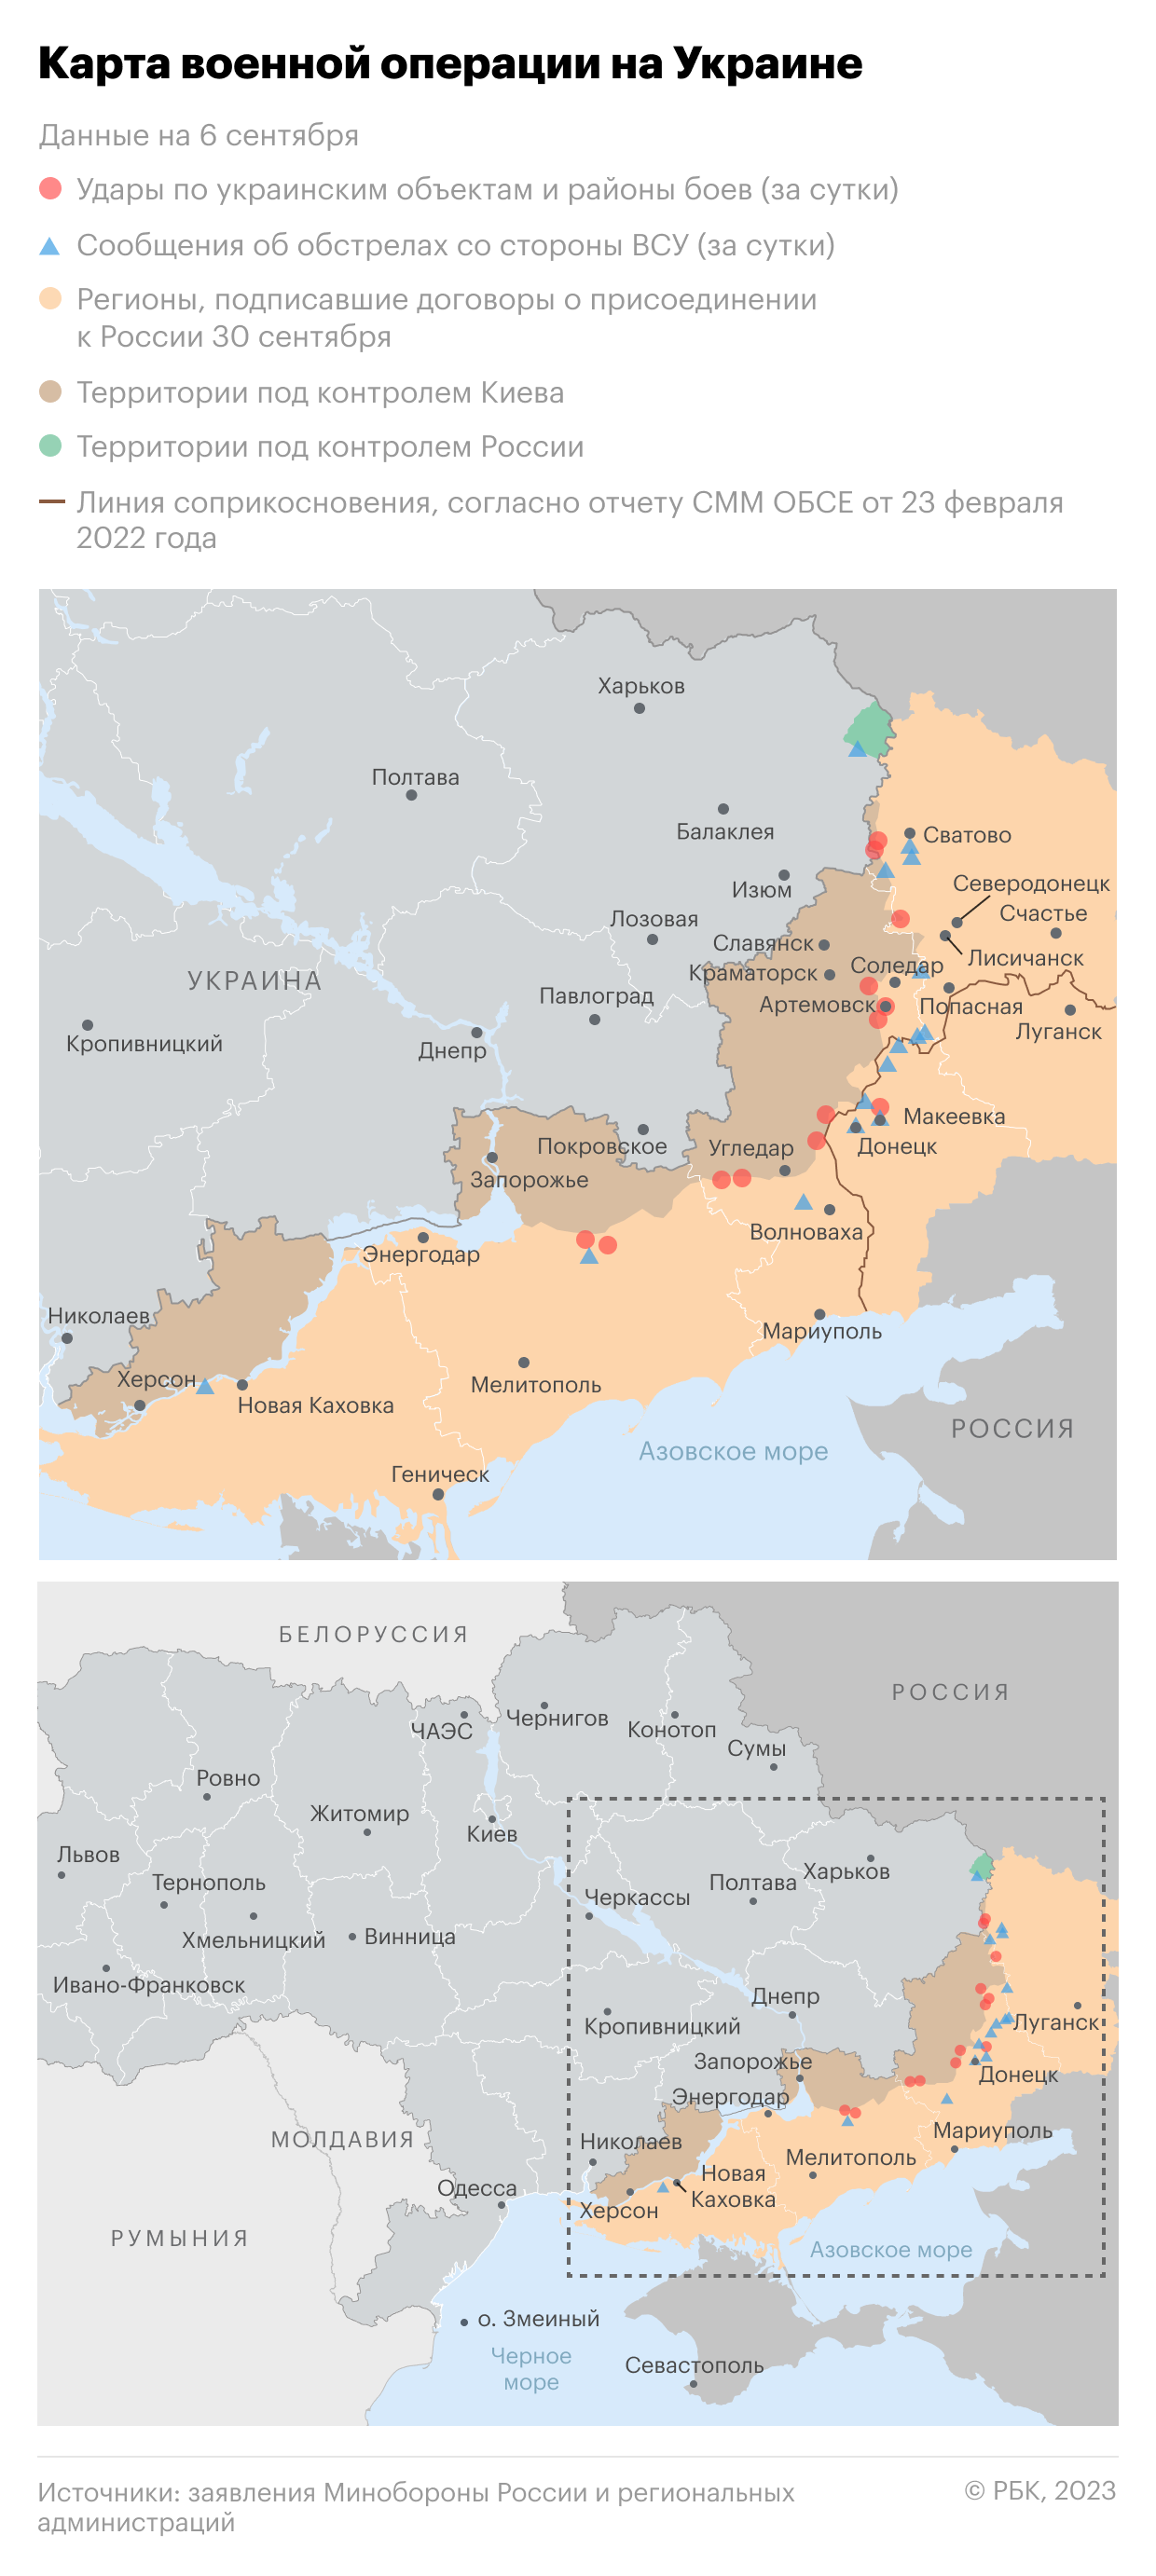 Военная операция на Украине. Карта на 6 сентября